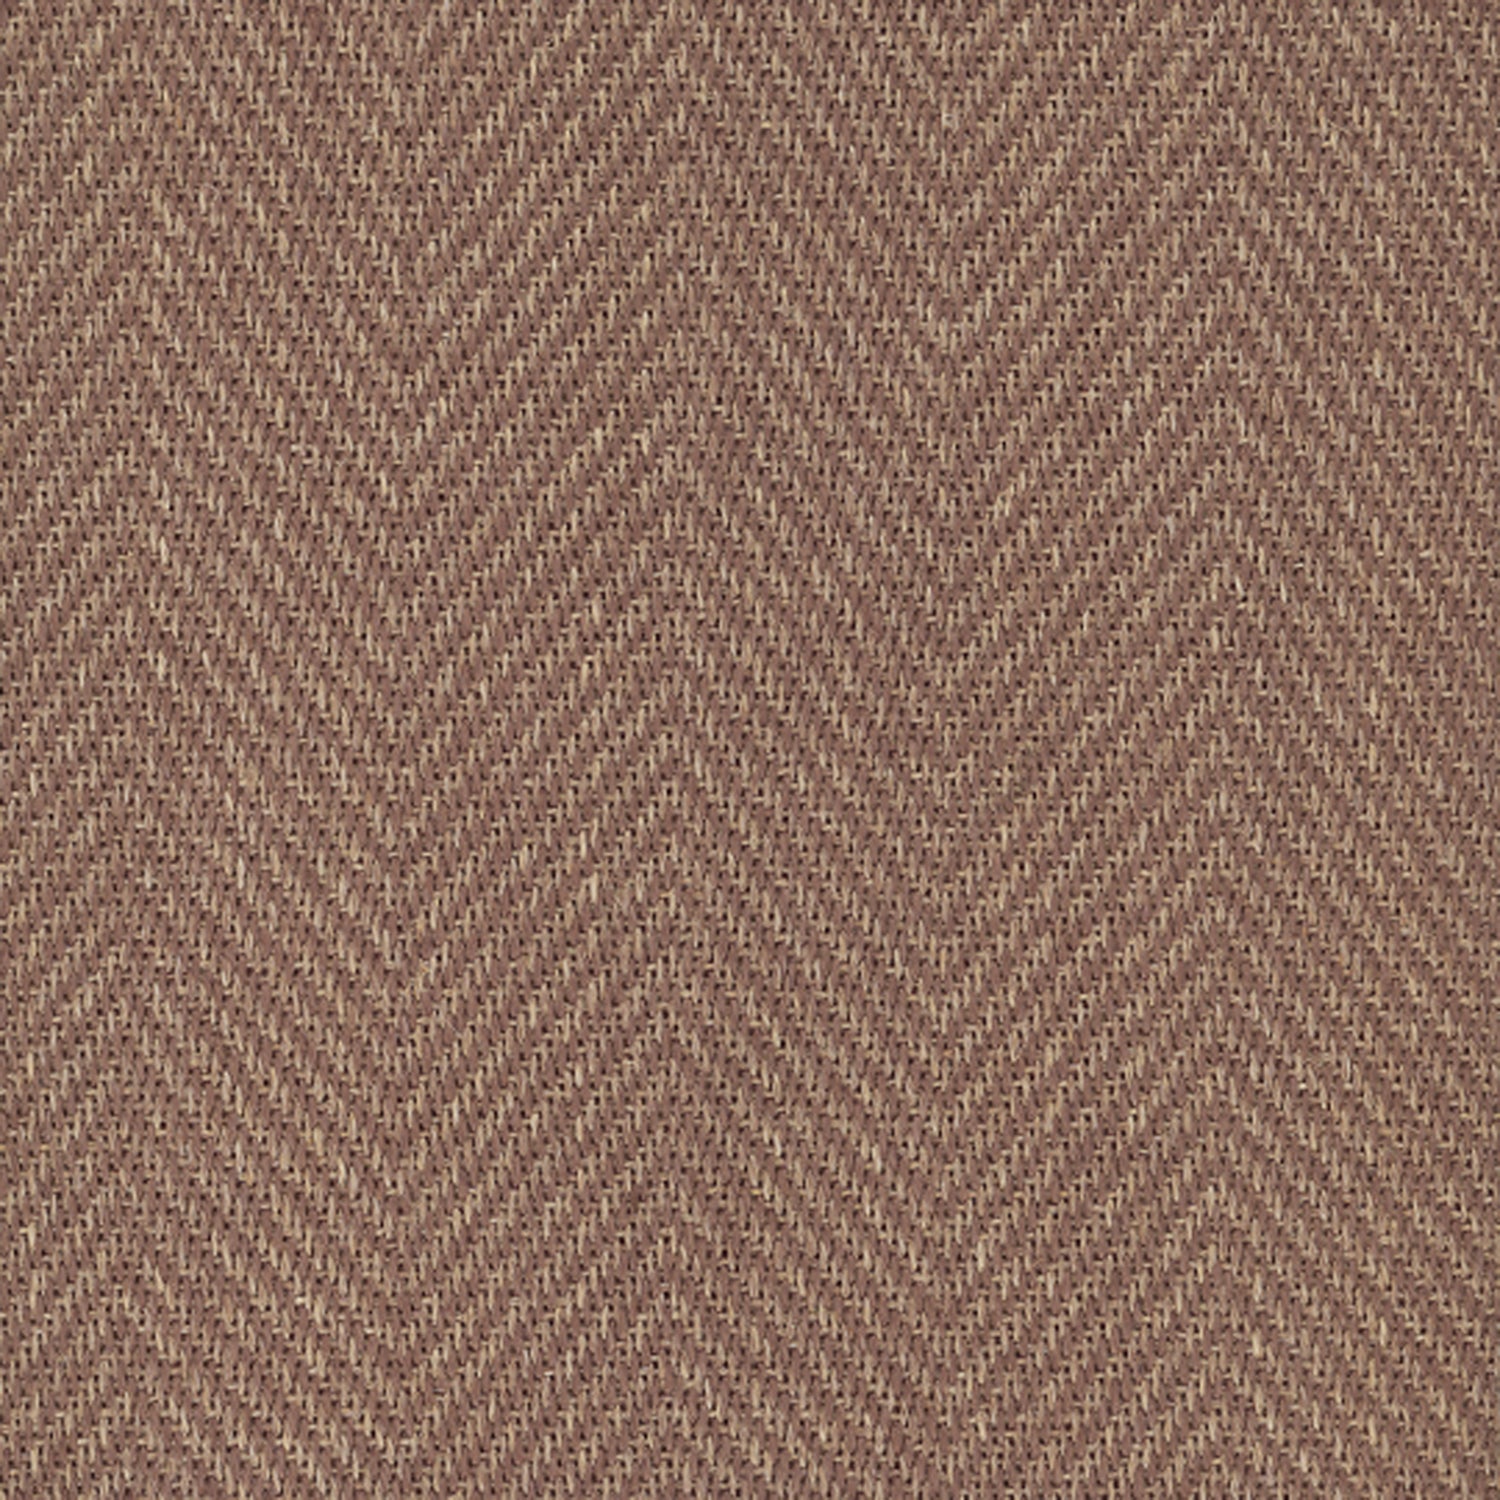 Sisal broadloom carpet swatch in a herringbone weave in brown and sable.